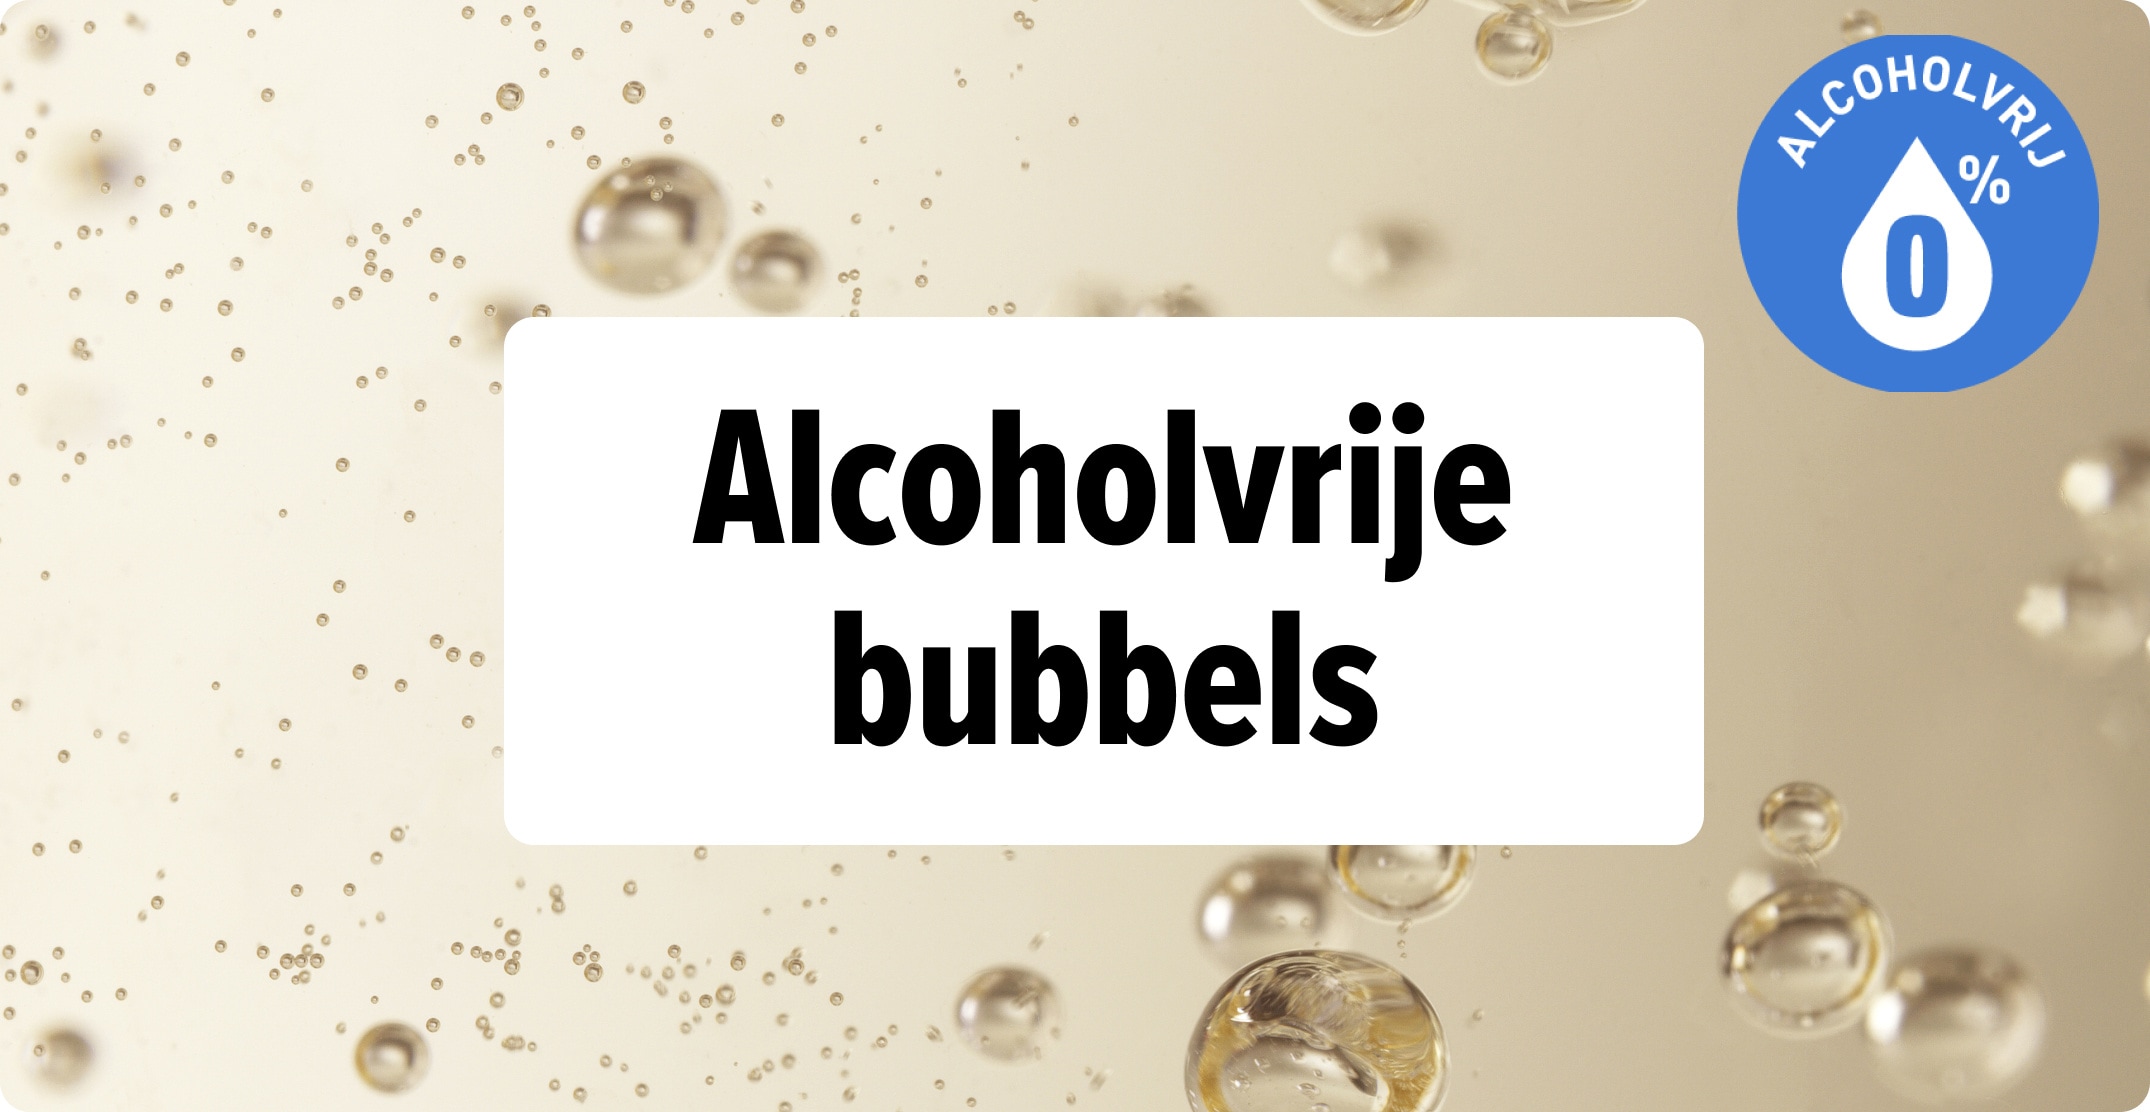 ontdek/bubbels/alcoholvrij-shop-mobile